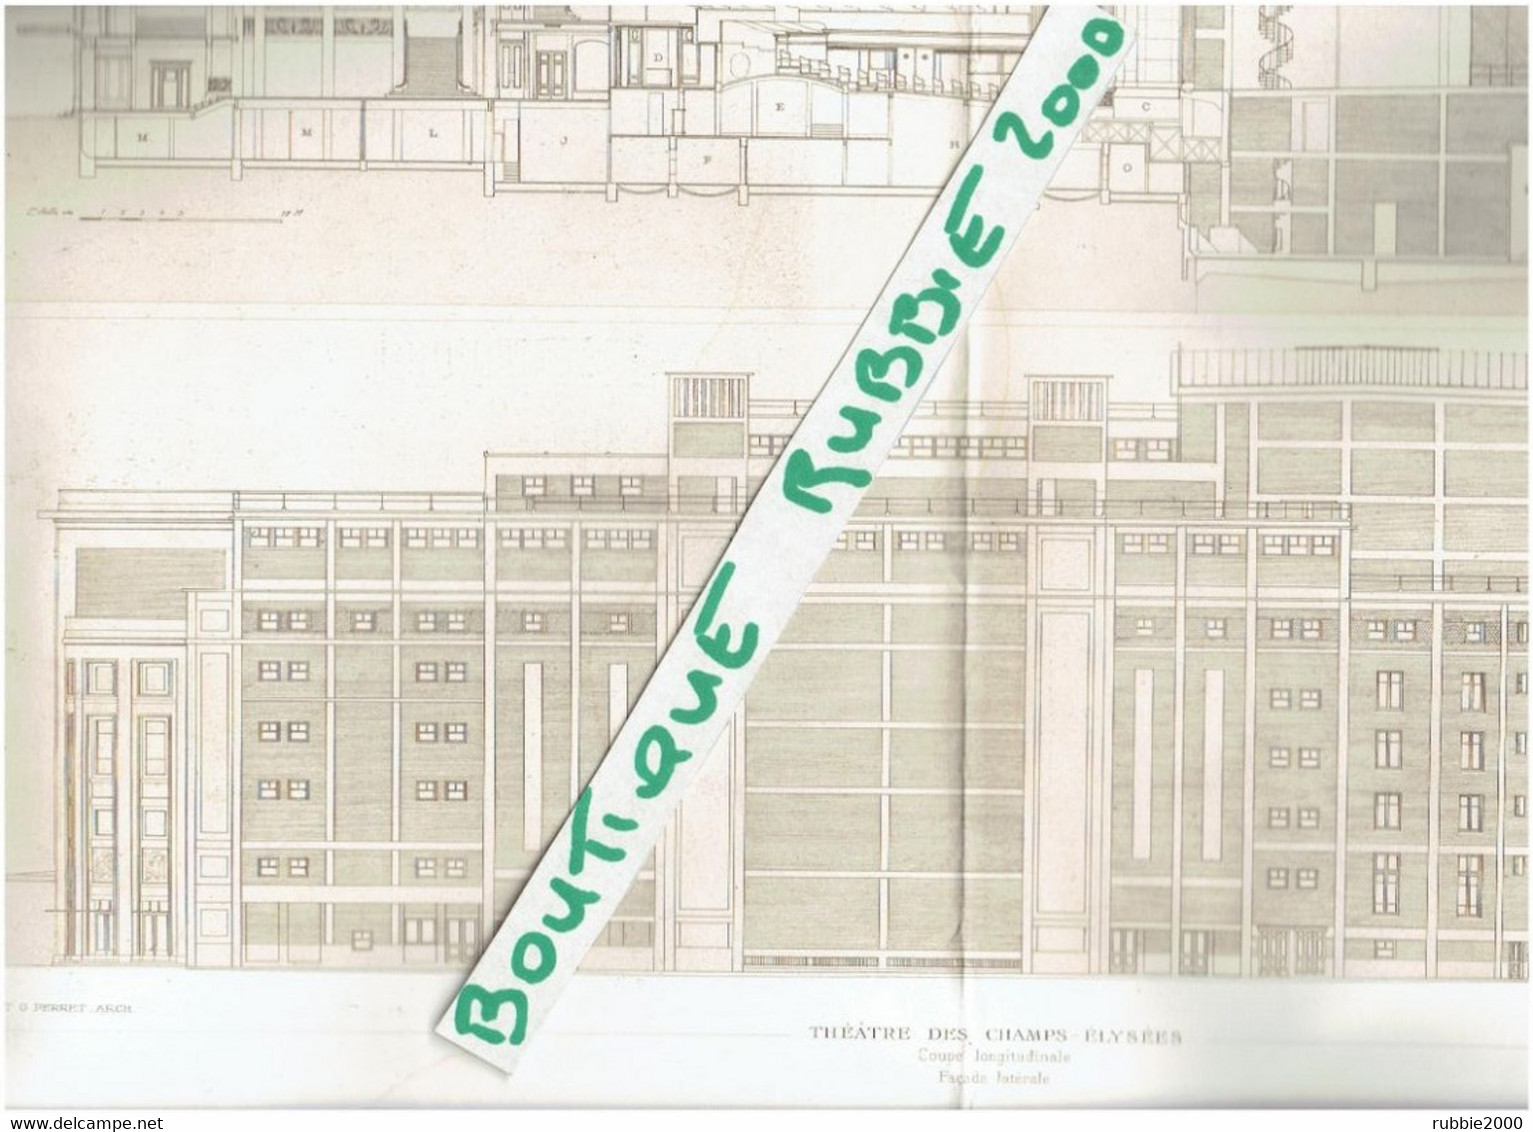 9 GRAVURES PLANS 1913 PARIS 8° THEATRE DES CHAMPS ELYSEES 15 AVENUE MONTAIGNE ARCHITECTES PERRET BOURDELLE VAN DE VELDE